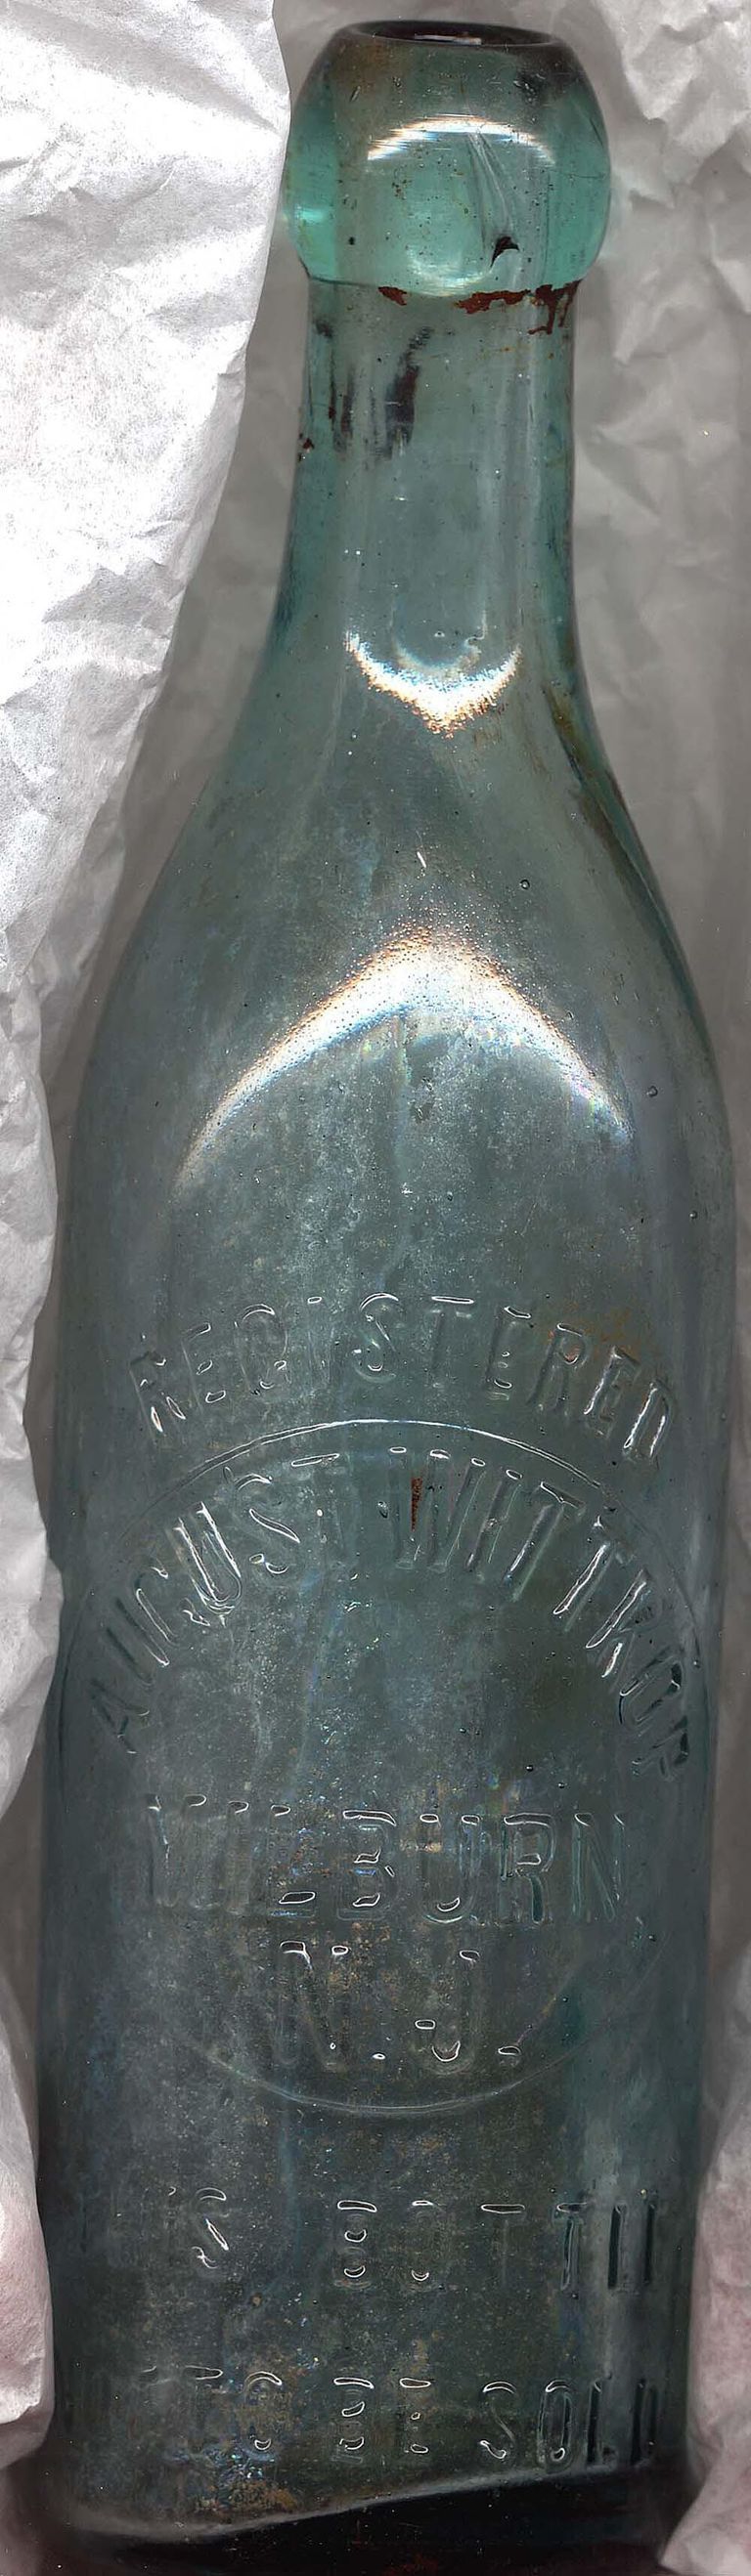          August Wittkop beer bottle, c. 1900 picture number 1
   